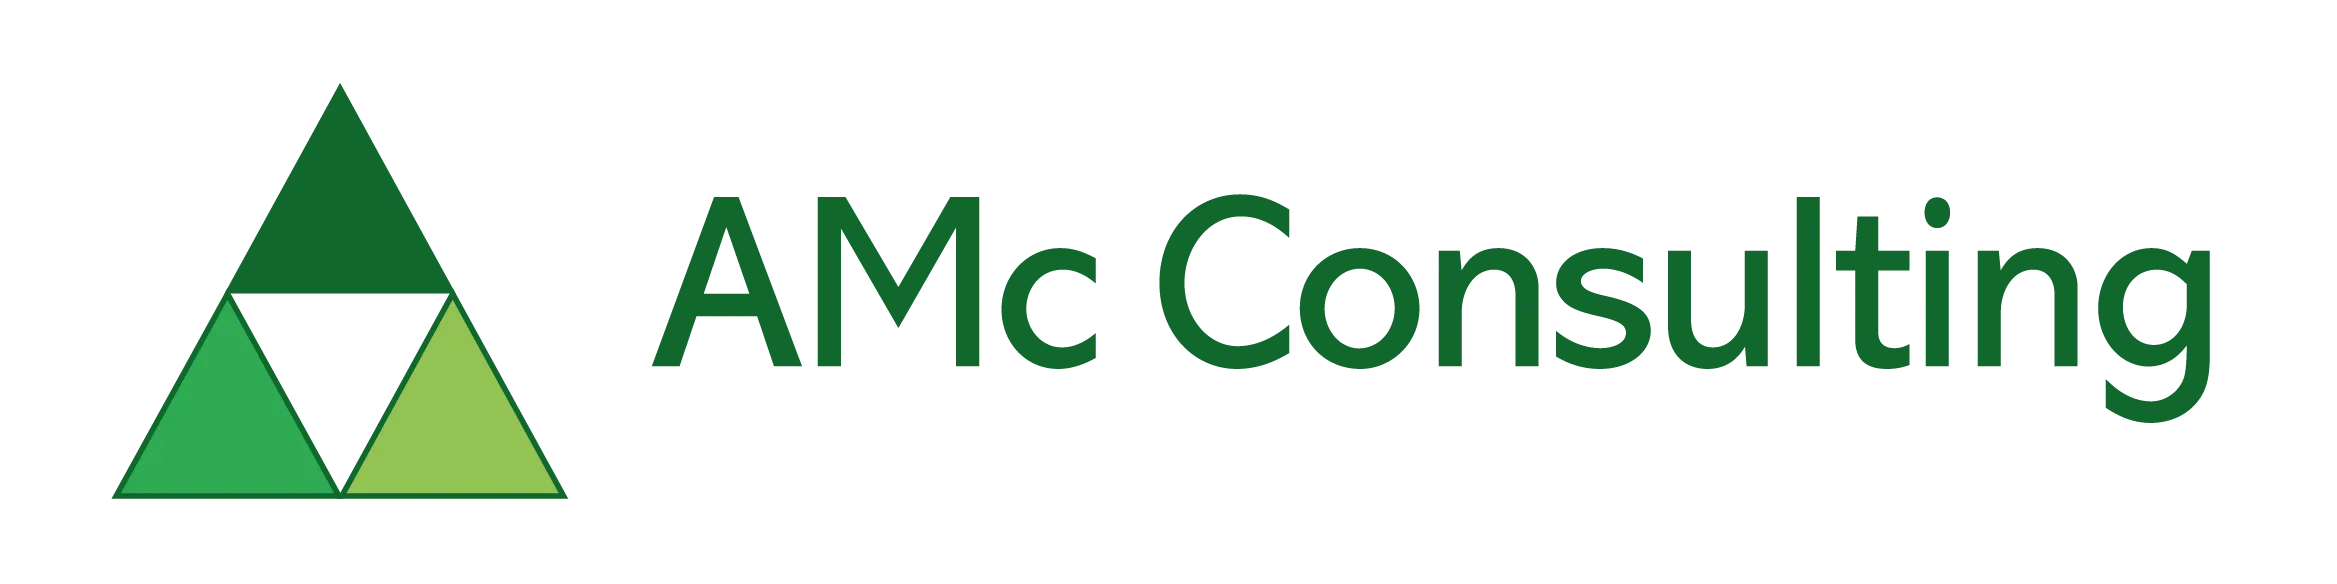 AMc Consulting in Uppingham logo.